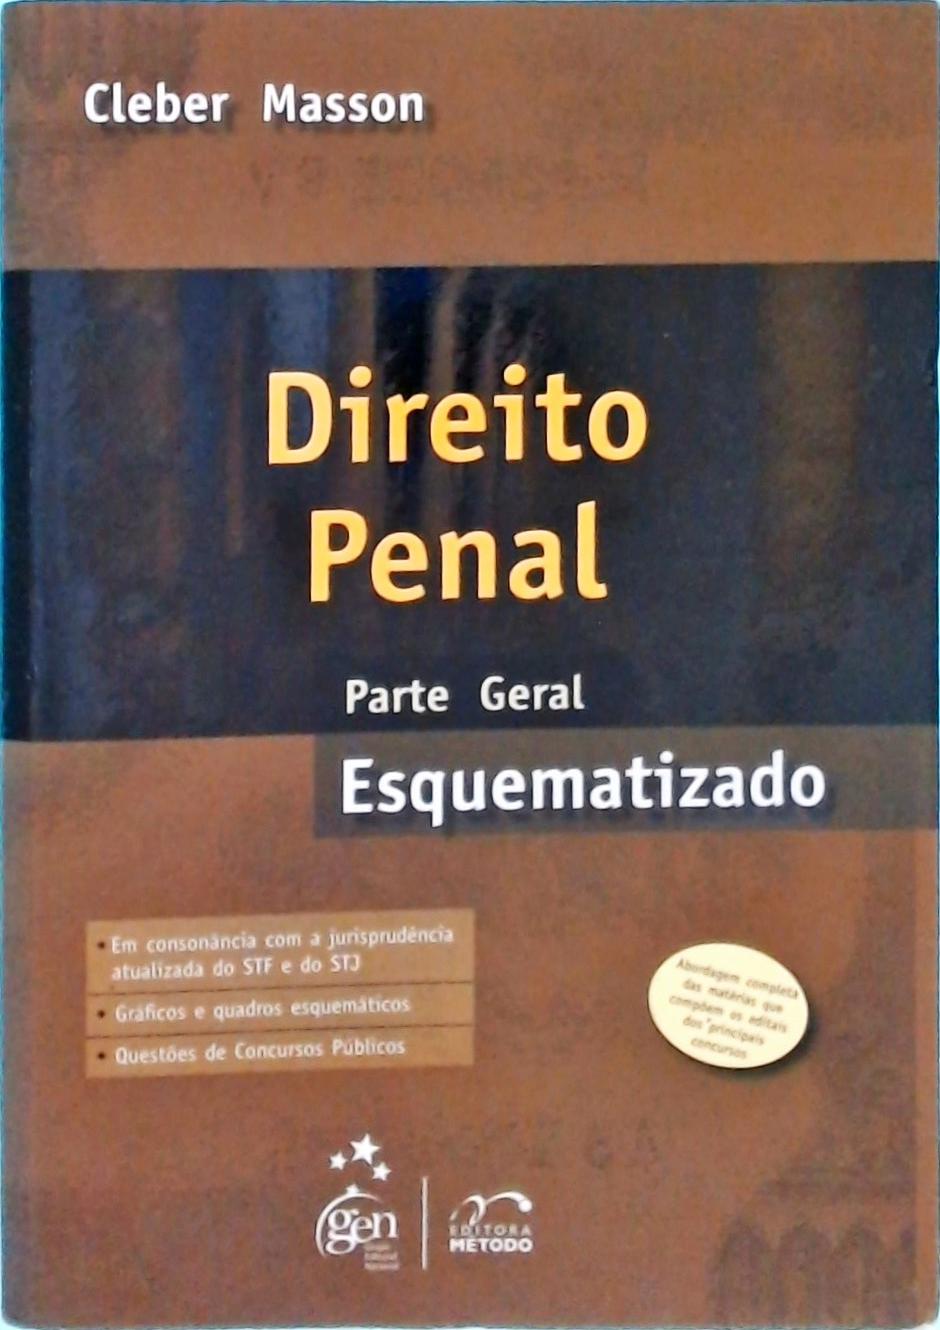 Direito Penal Esquematizado (2009)